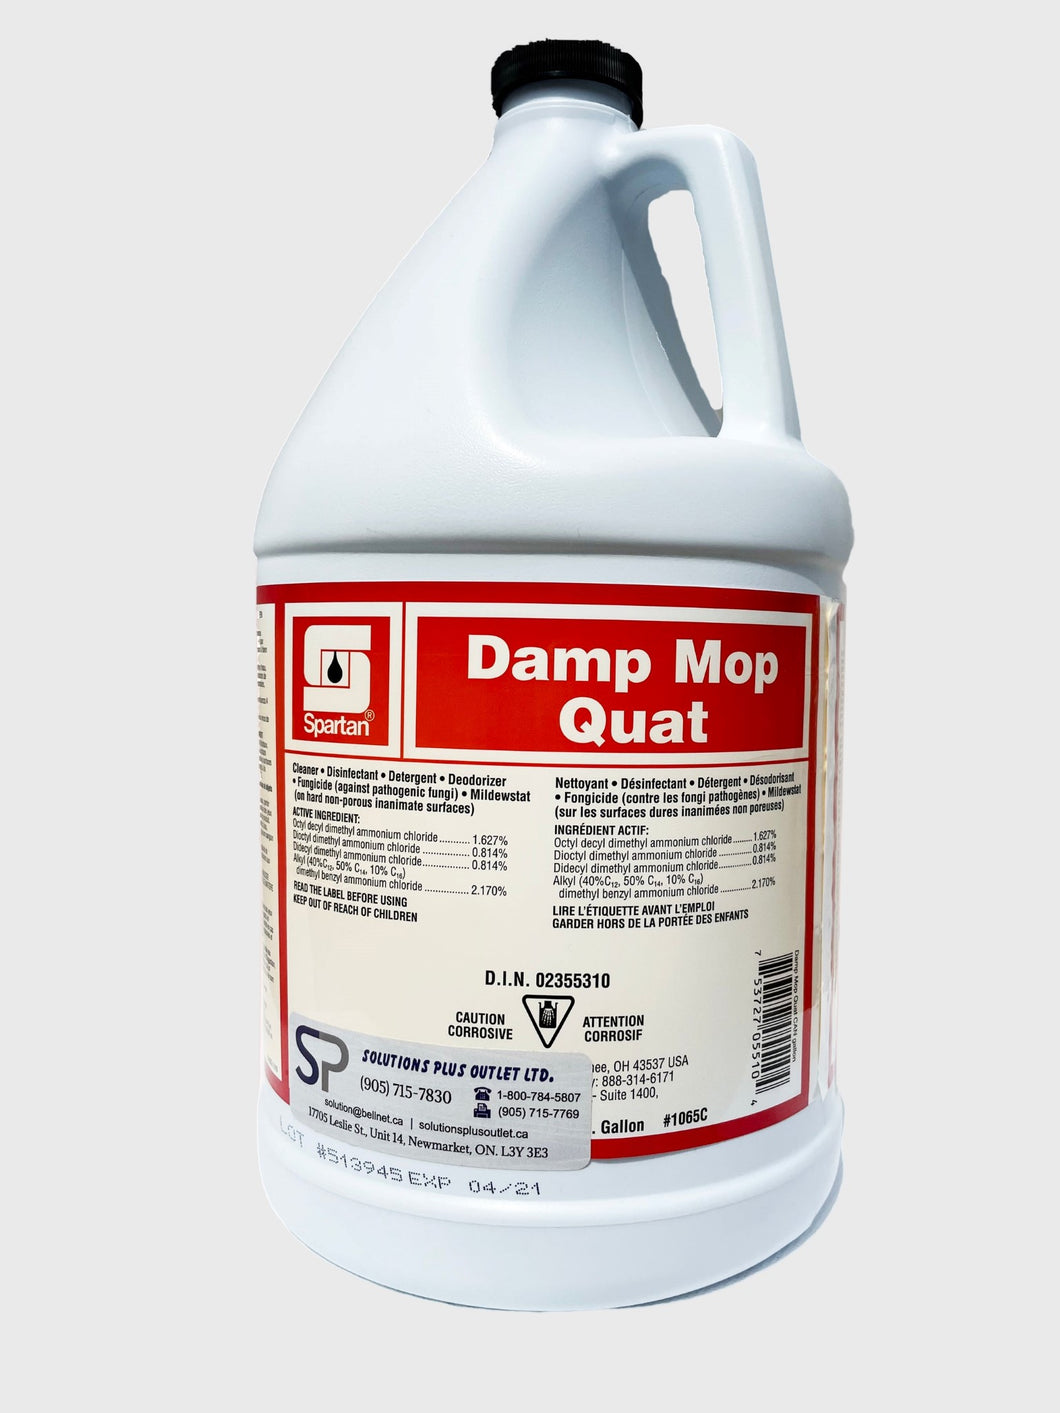 Damp Mop Quat Disinfectant